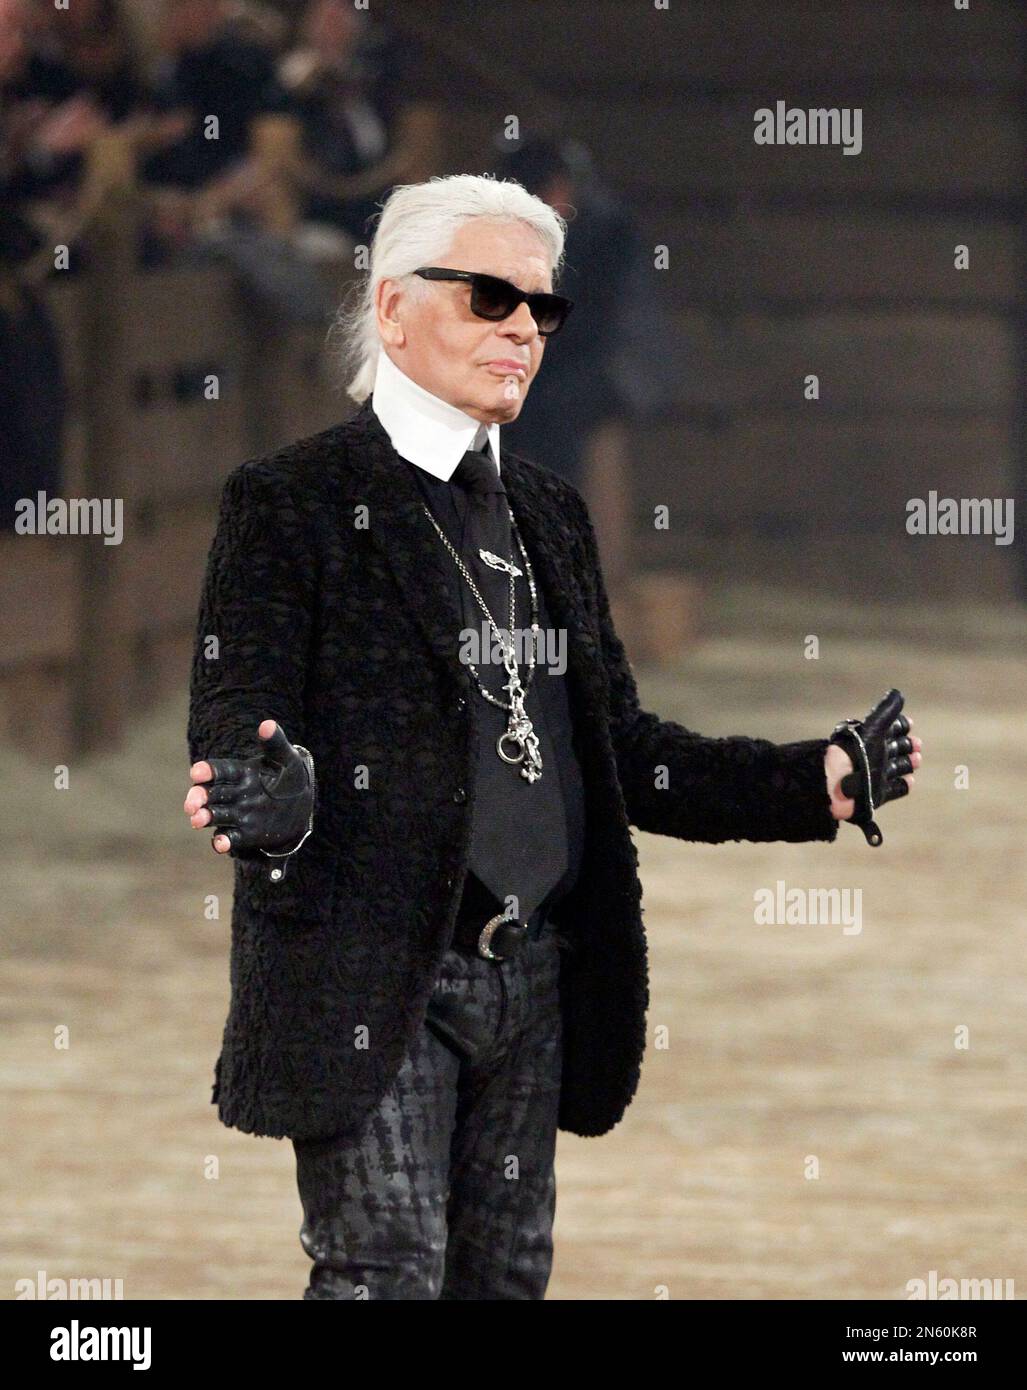 Karl Lagerfeld Dies at 85, Famed Fashion Designer, Chanel Leader